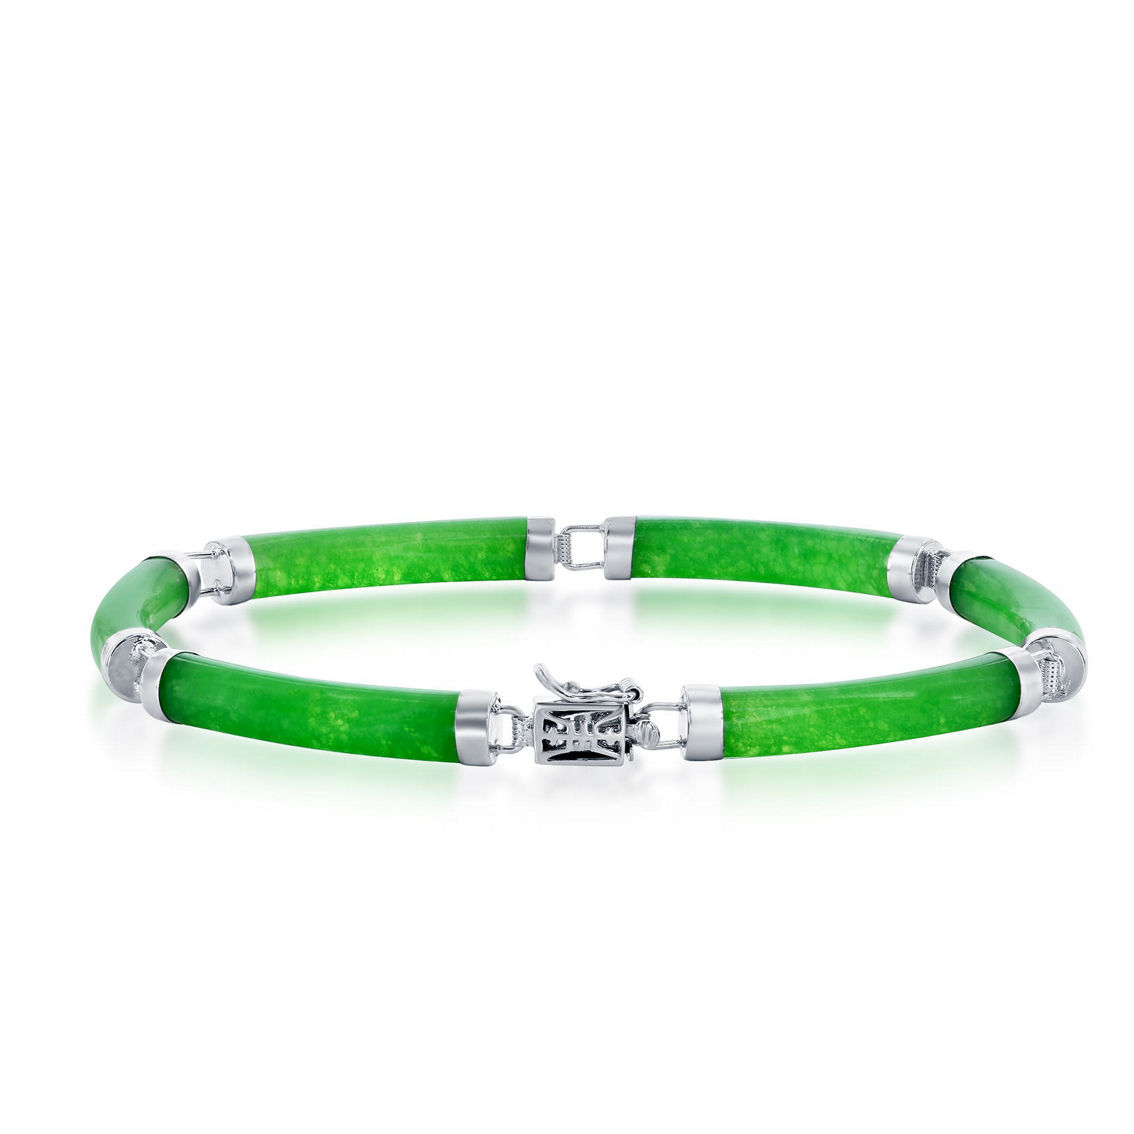 Caribbean Treasures Sterling Silver Green Jade Curved Bar Link Bracelet - Image 2 of 3